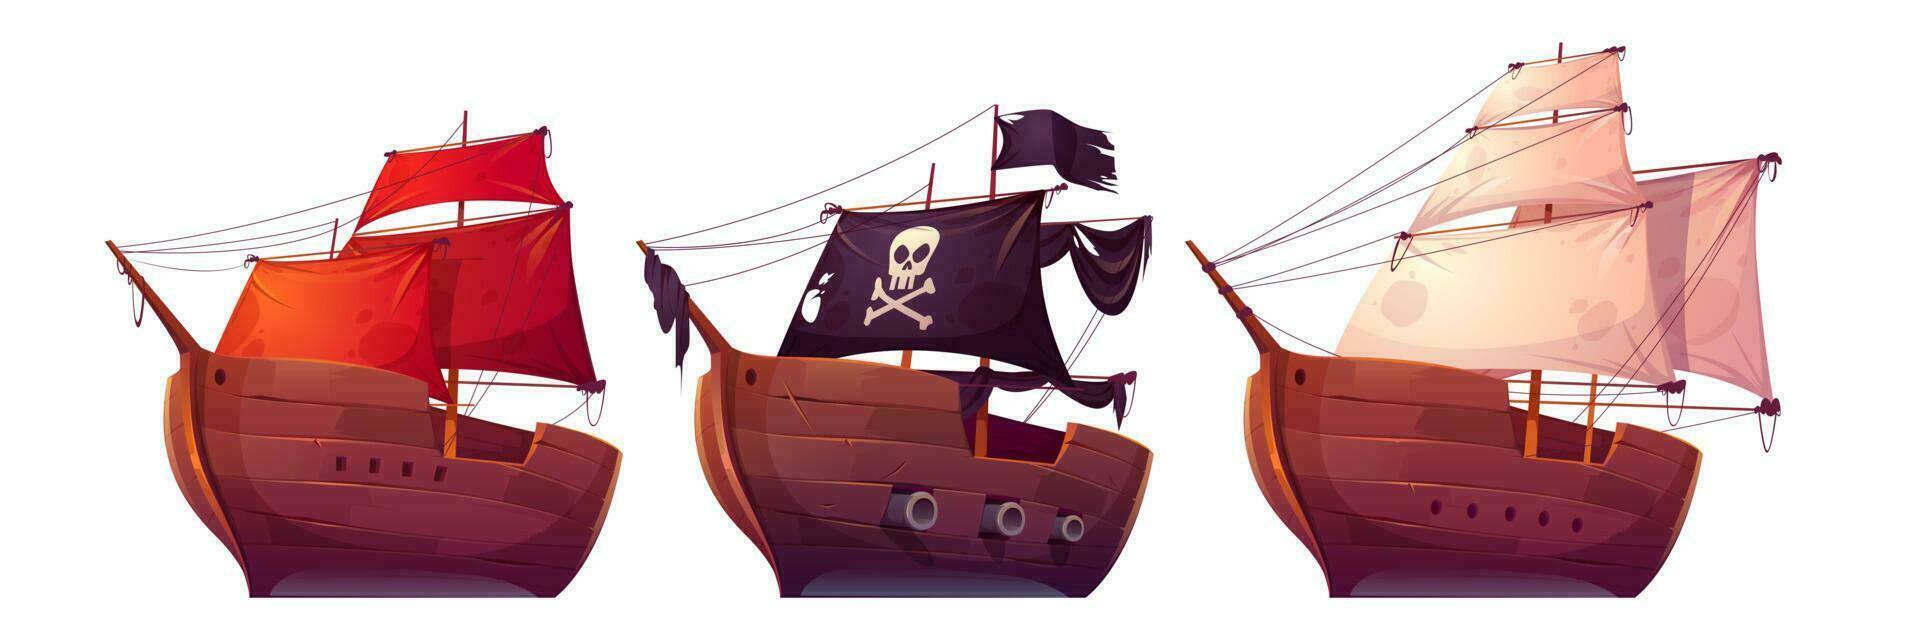 vektor segla båtar med vit, röd och svart segel